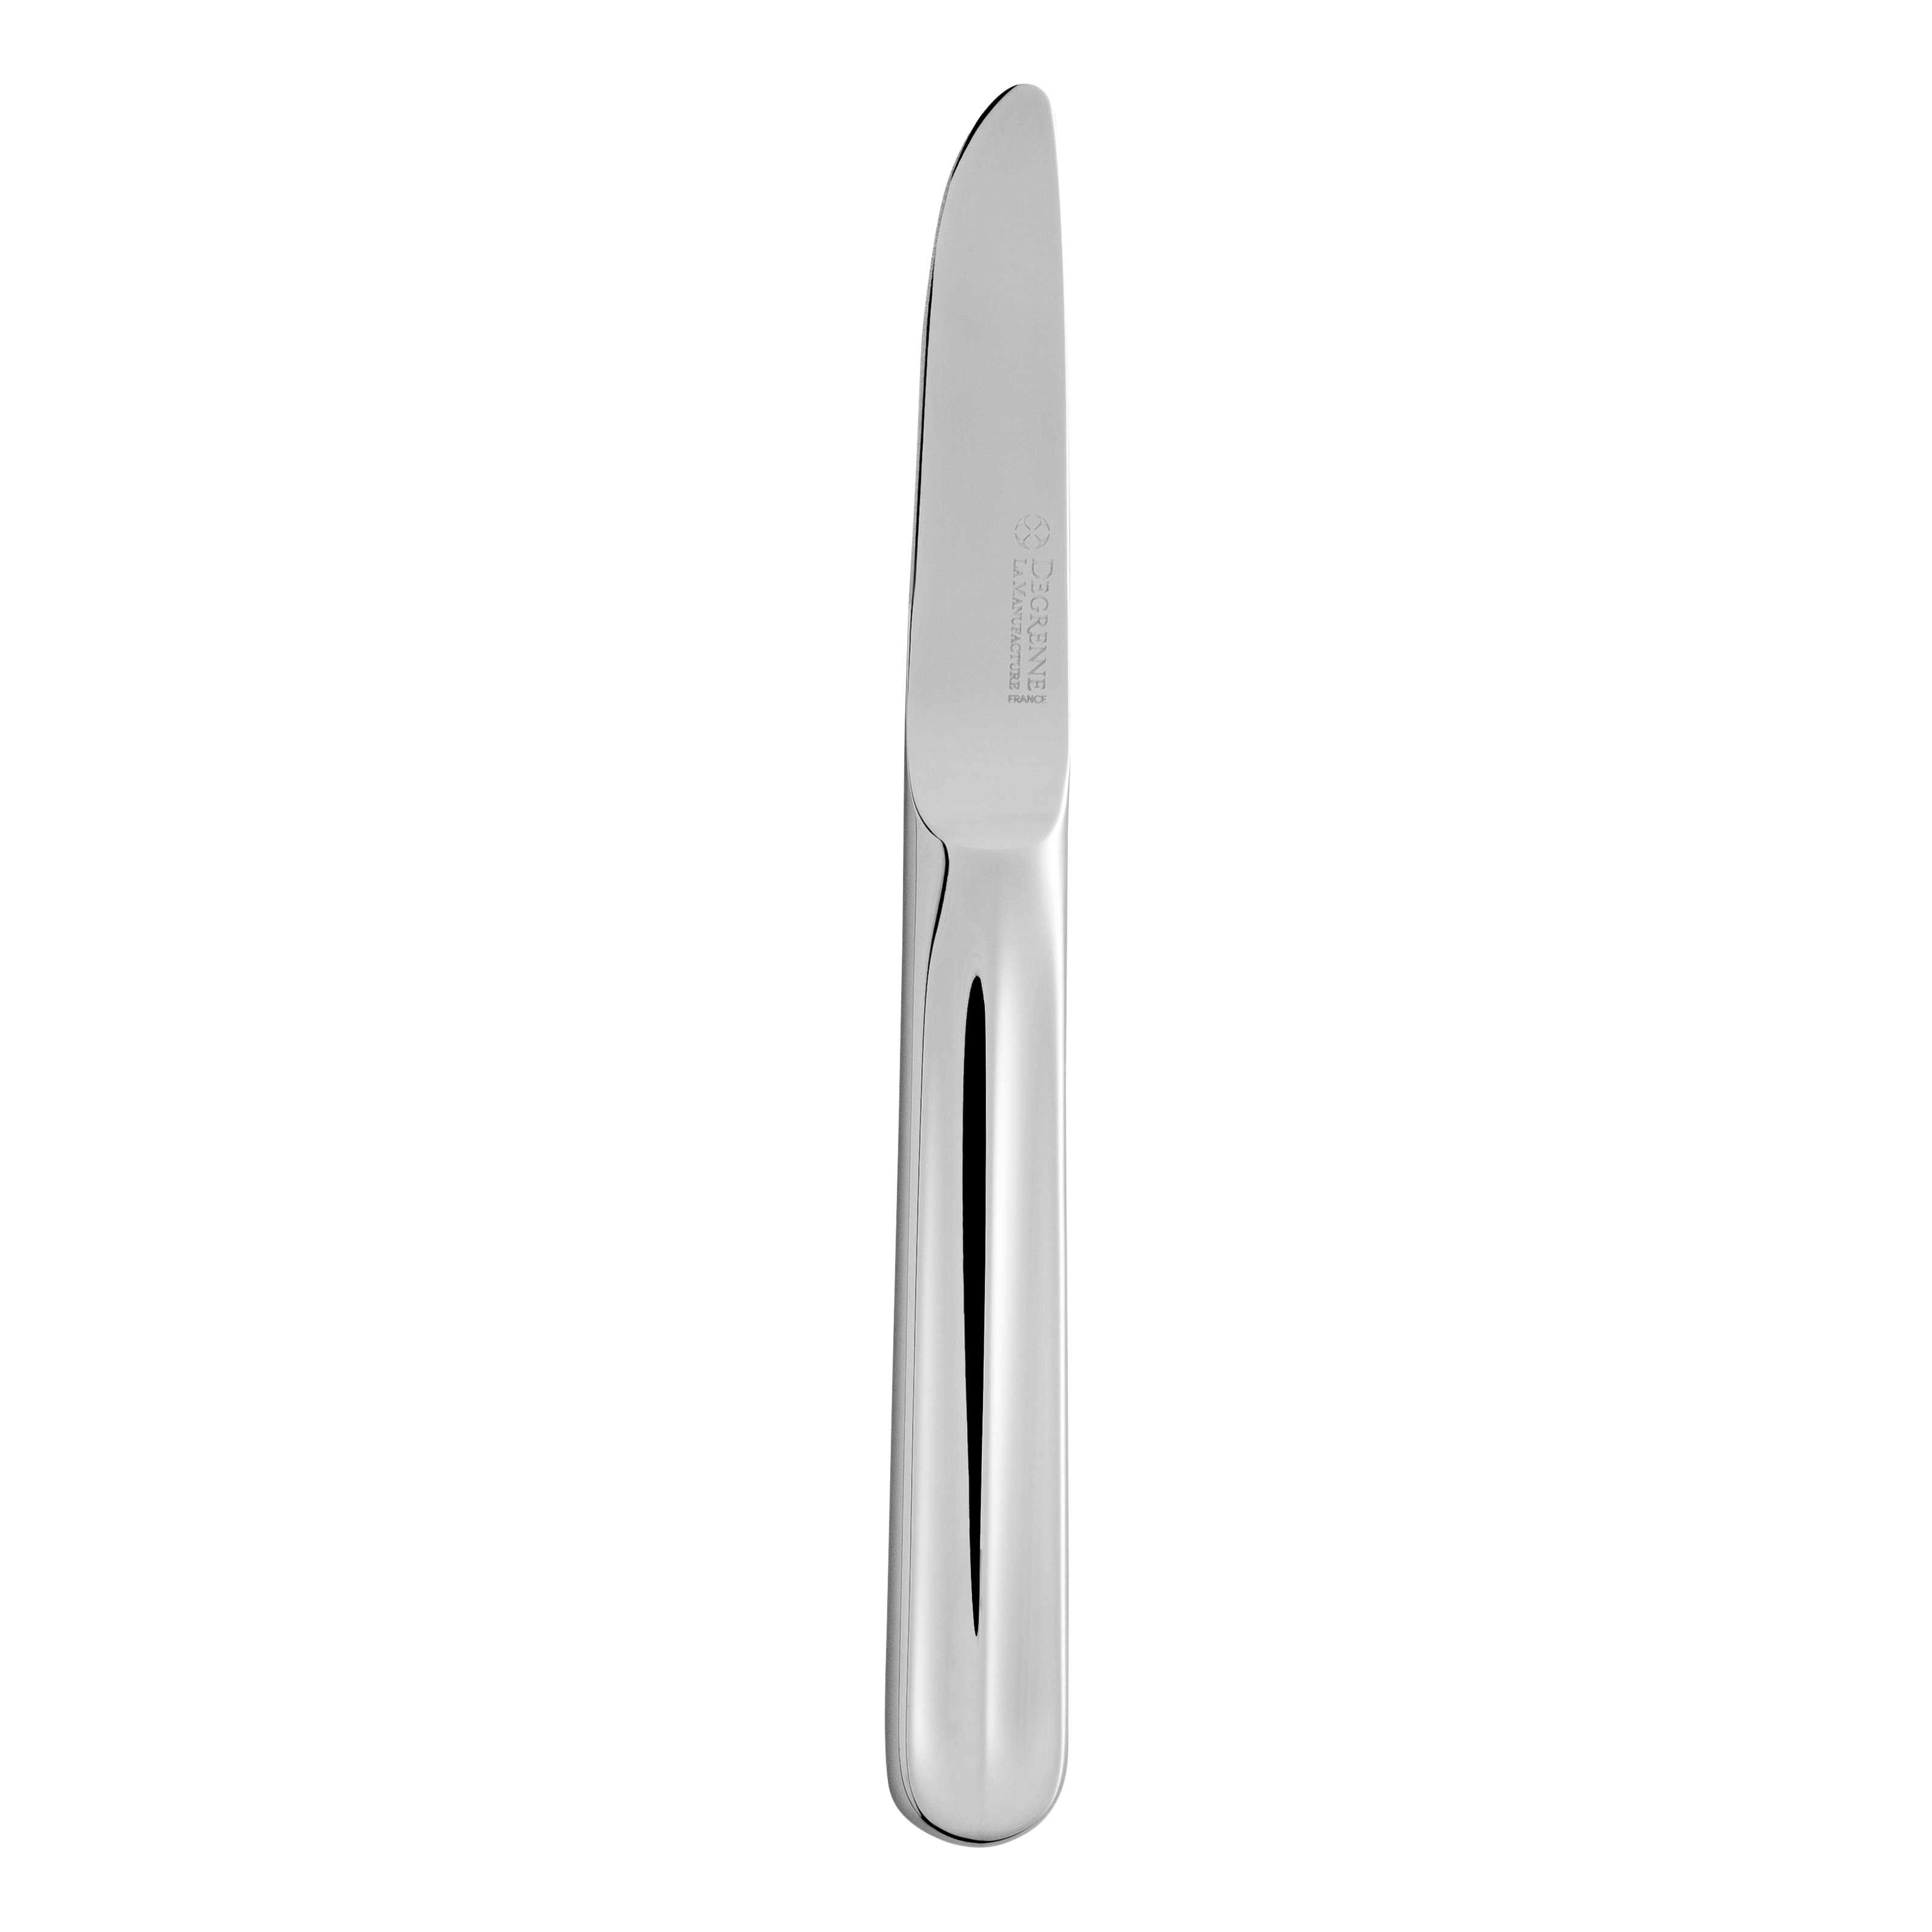 Flatware/Cutlery - 241030